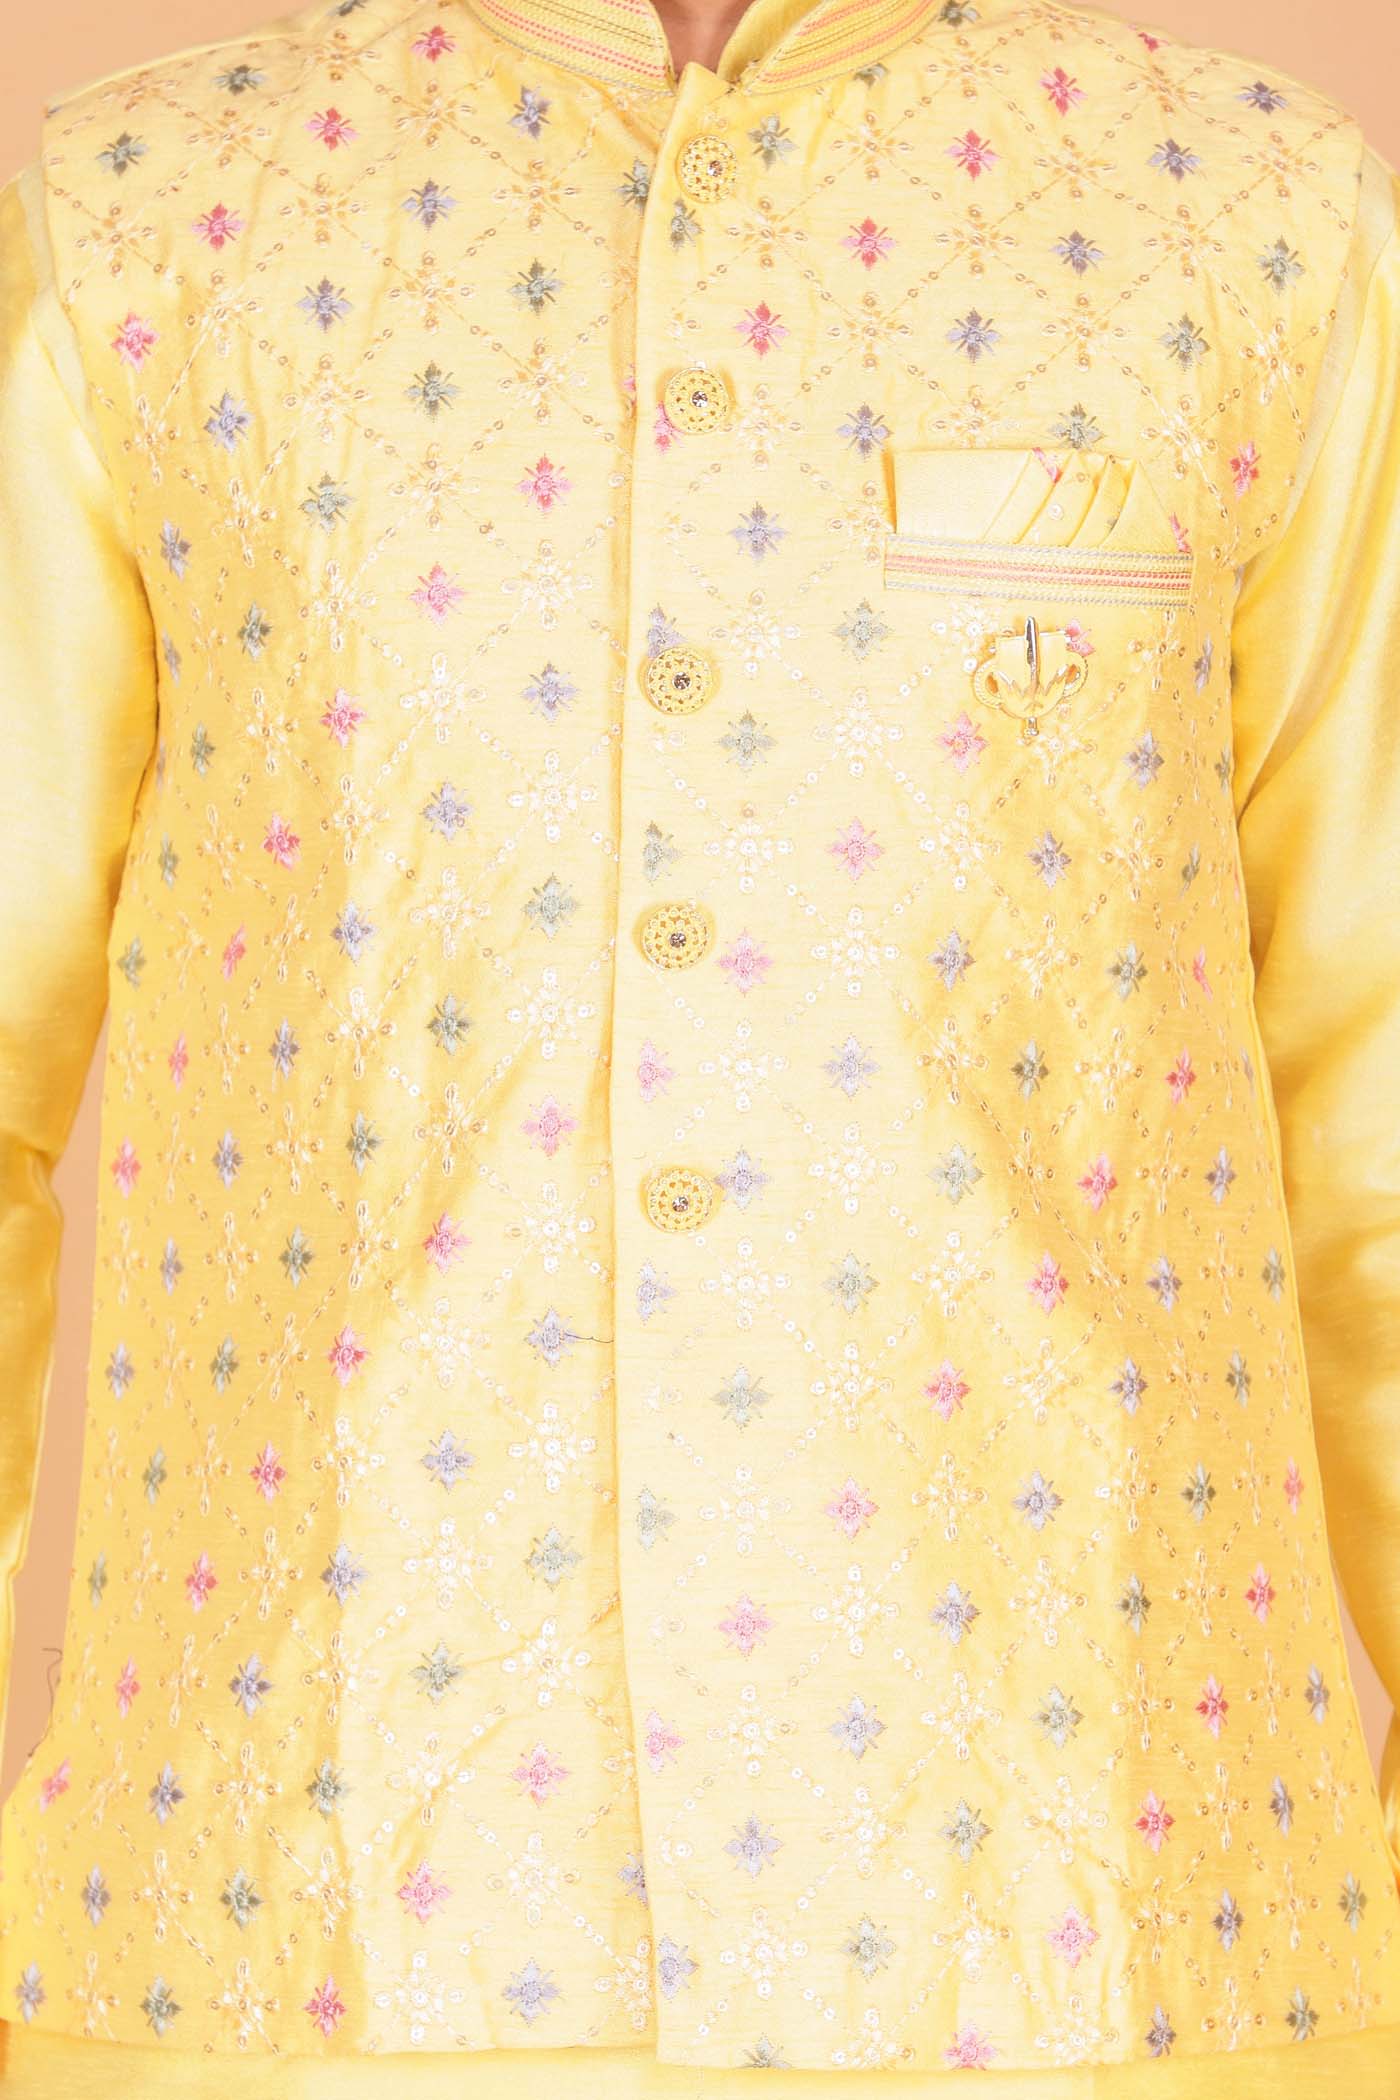 Designer Raw silk waistcoat kurta suit - Yellow